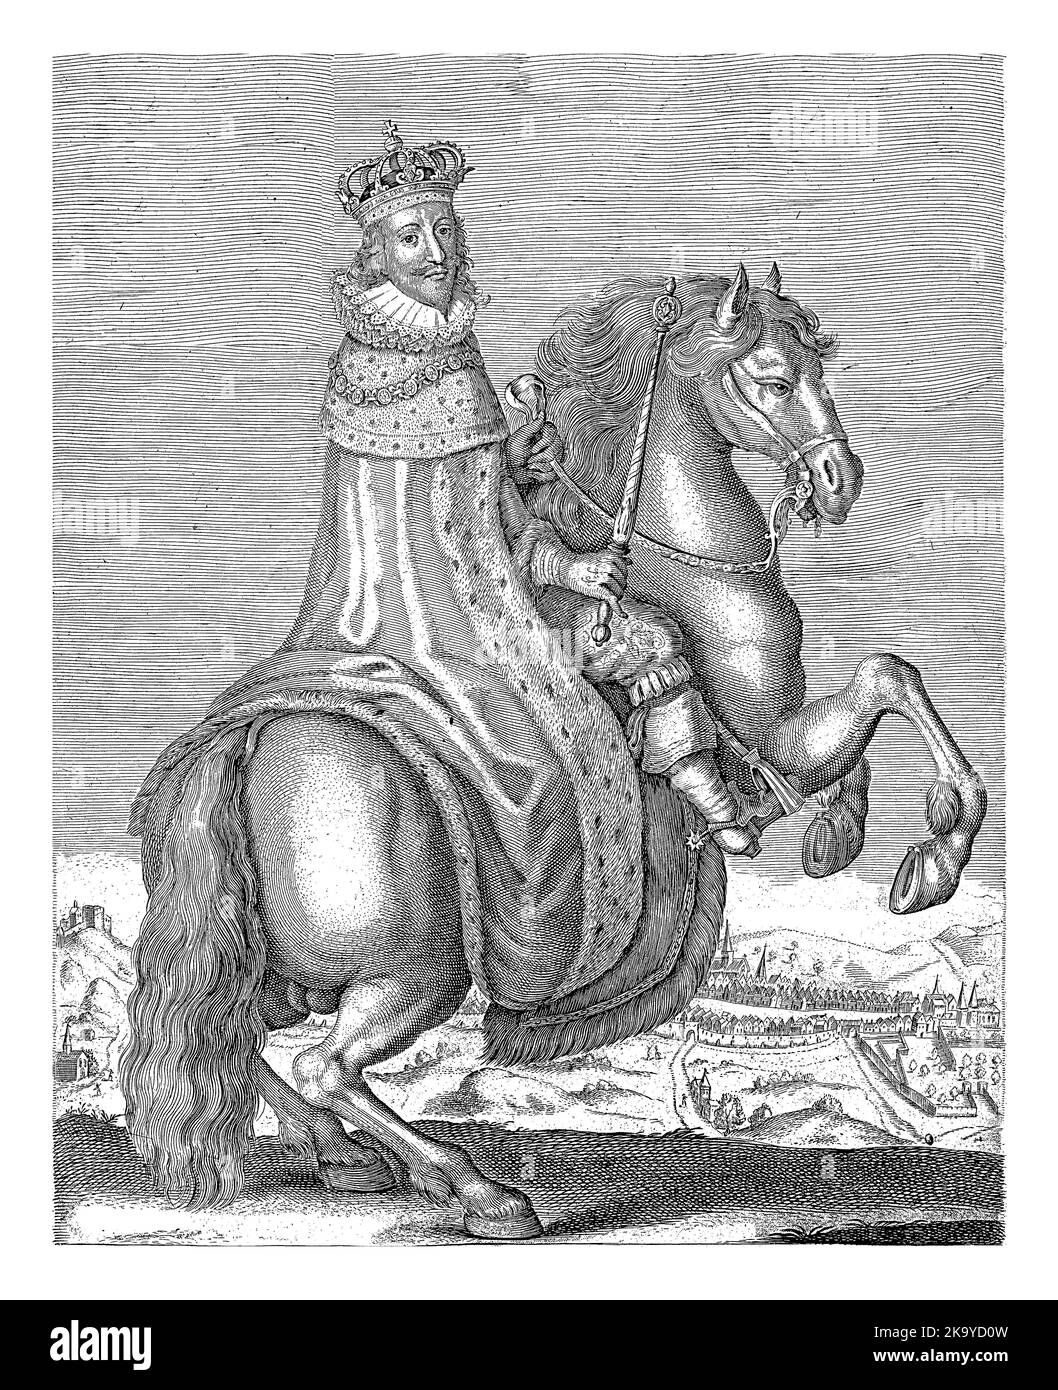 Ritratto equestre di Carlo i, re d'Inghilterra, vestito di mantello reale, con corona sulla testa e scettro in mano. Sullo sfondo è la t Foto Stock